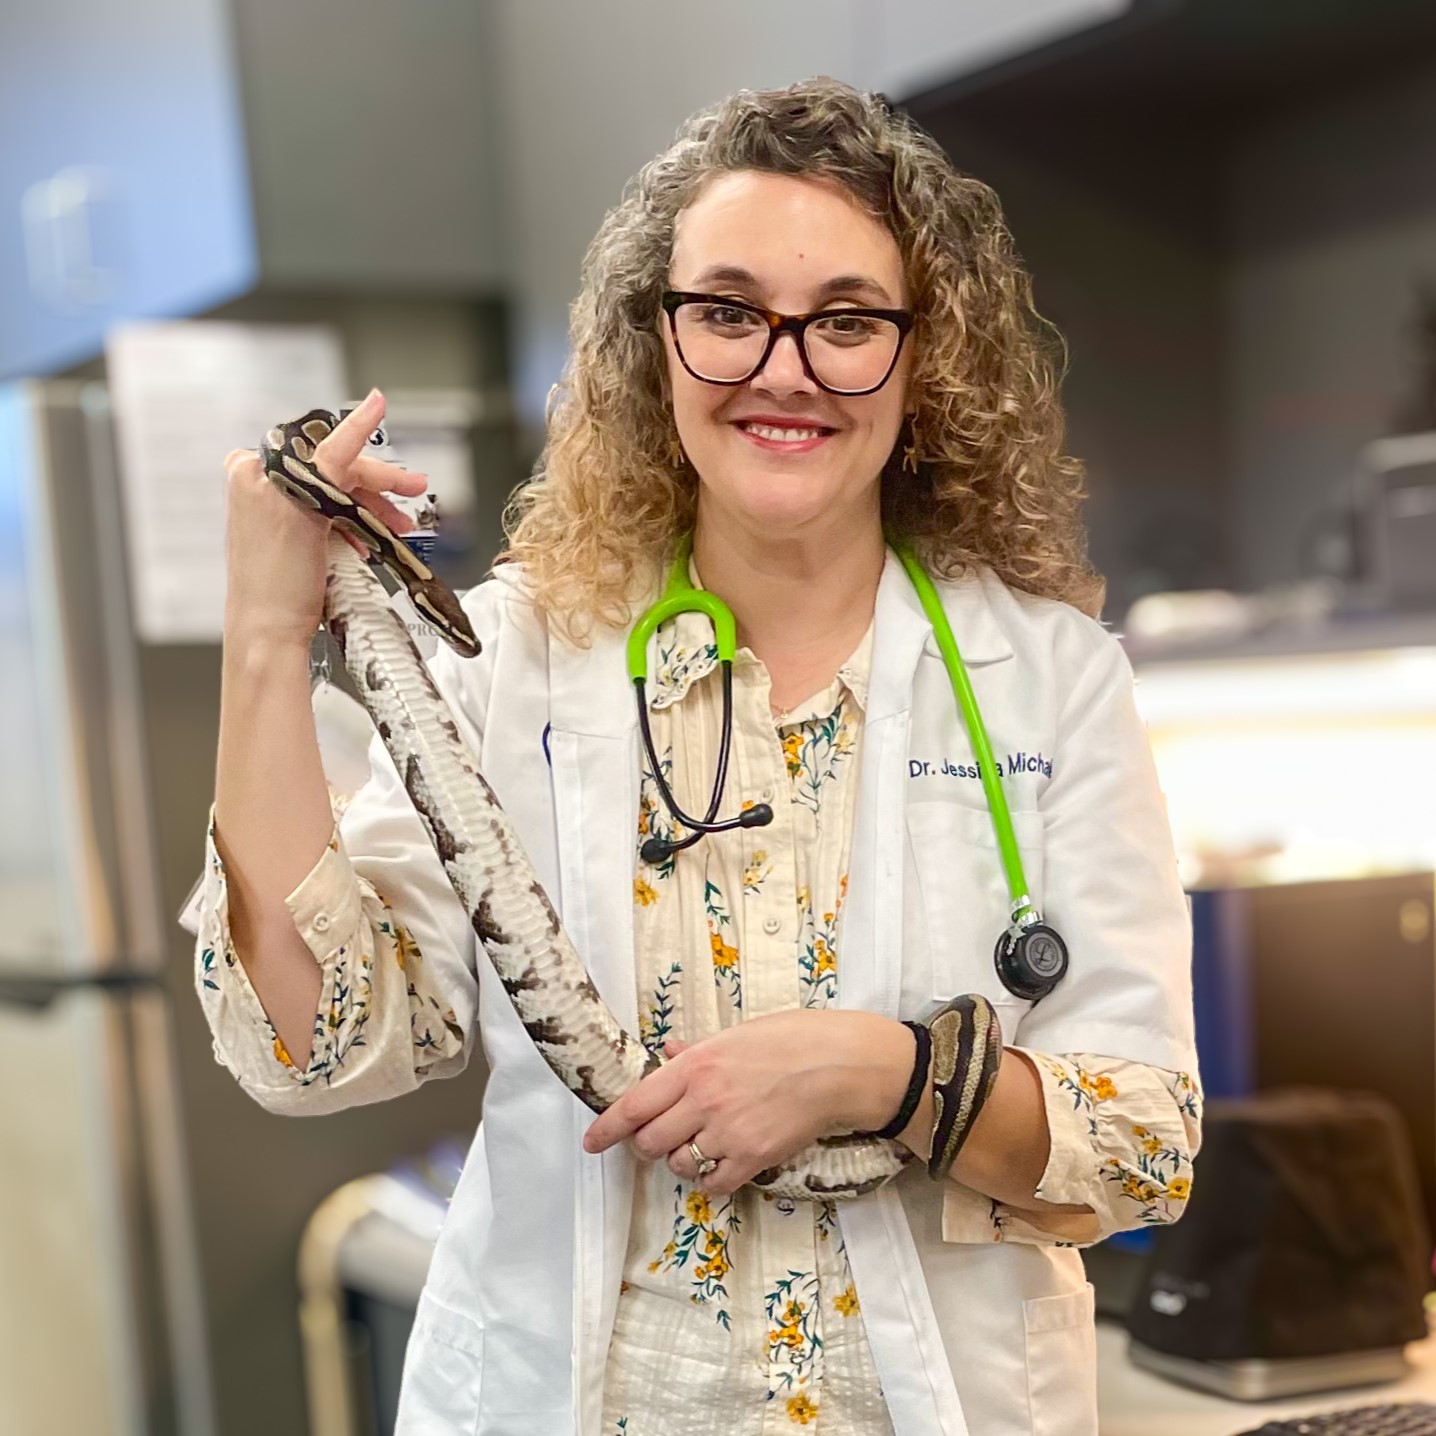 Dr. Mchalec Holding a Snake